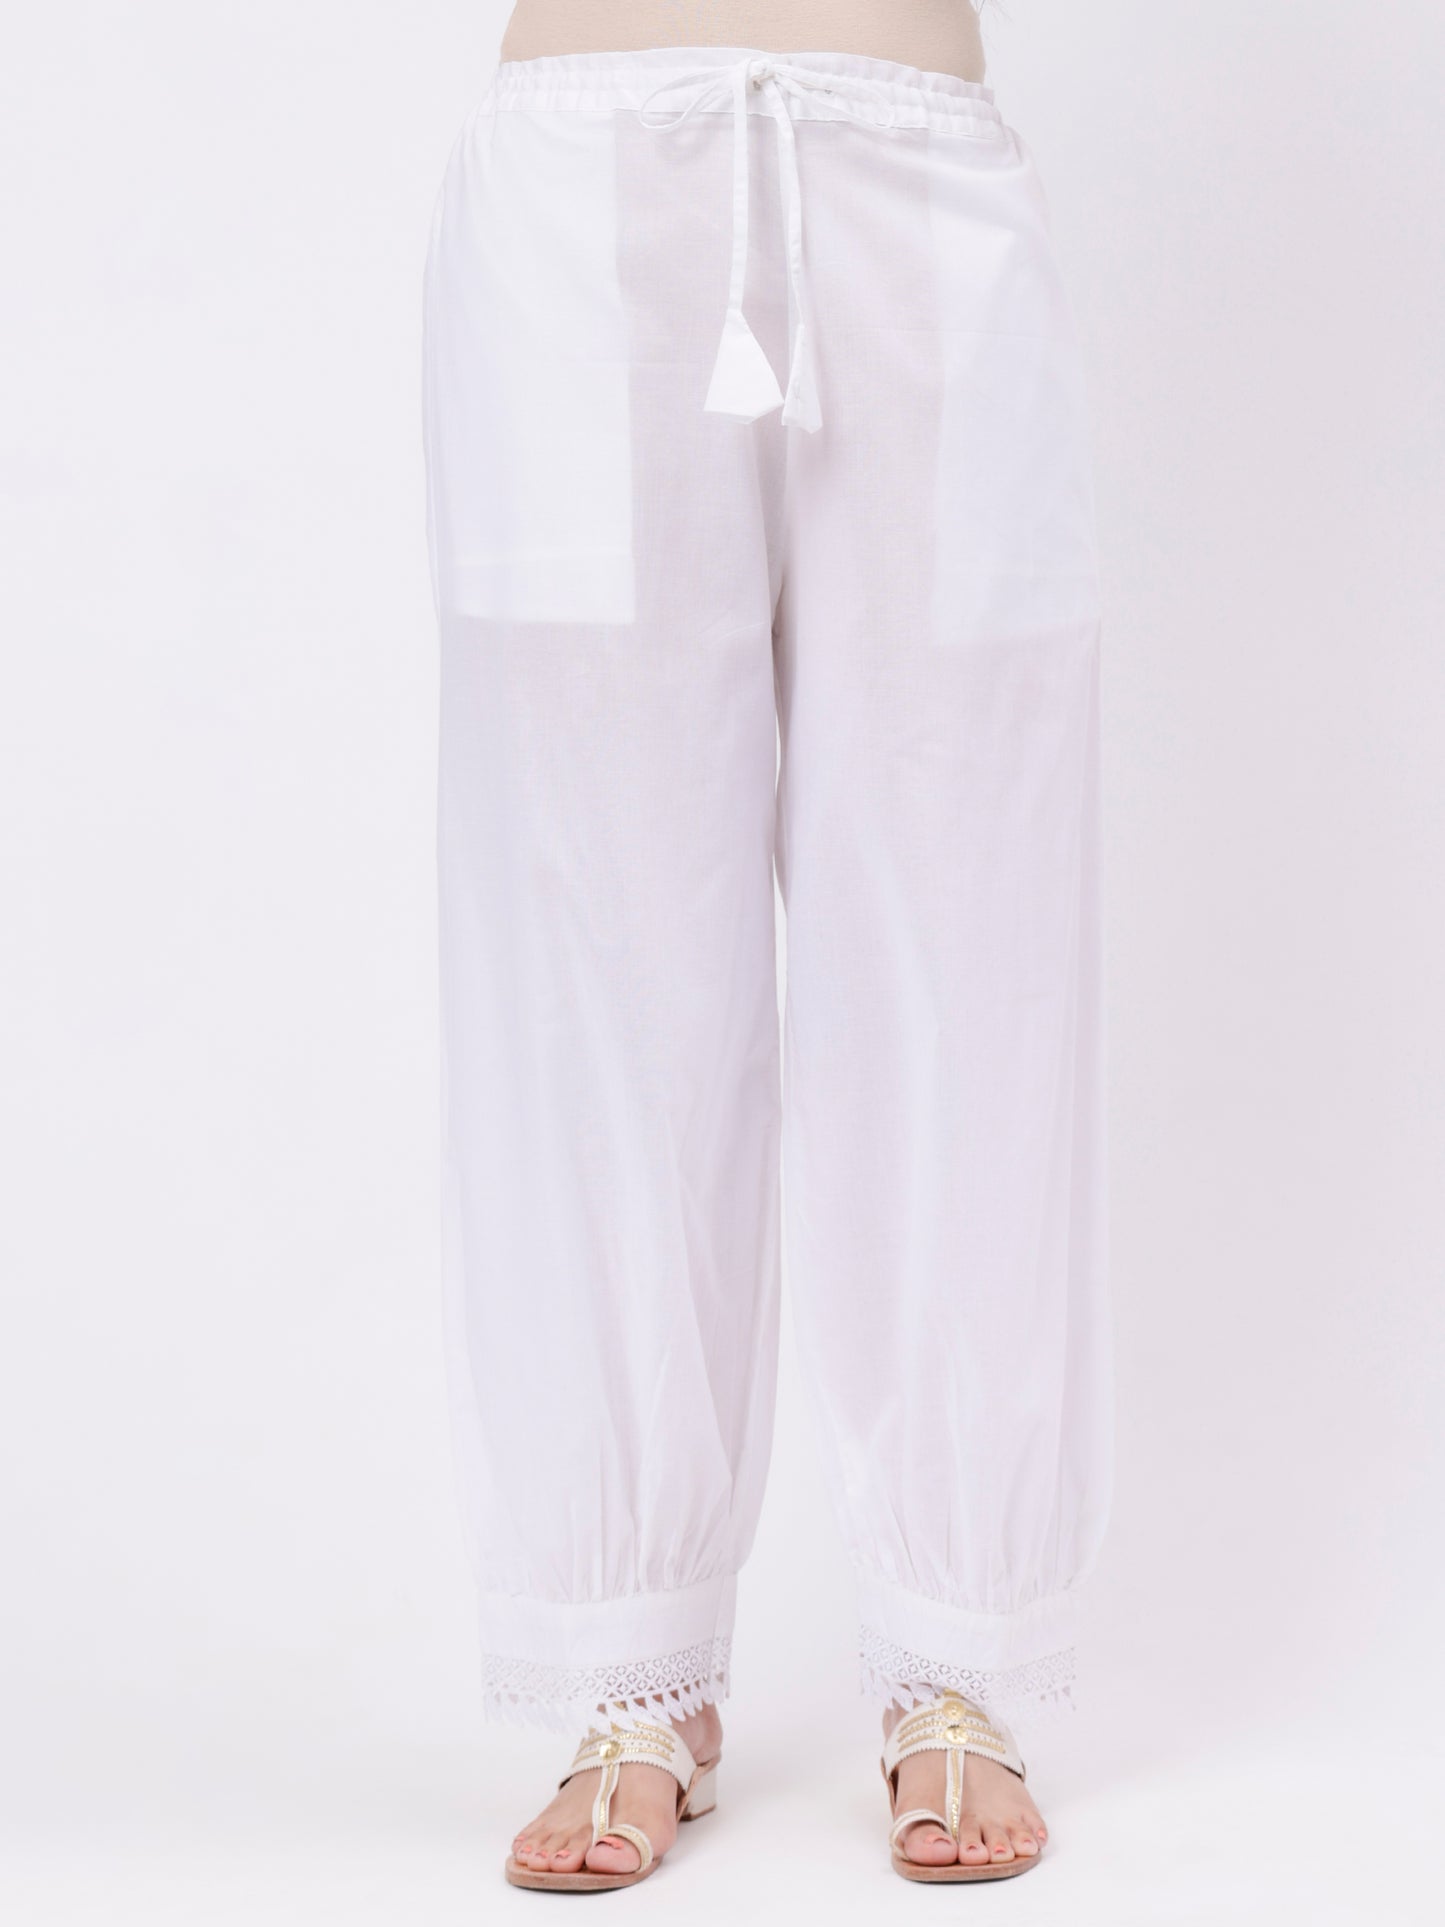 White Cotton Lace Pant